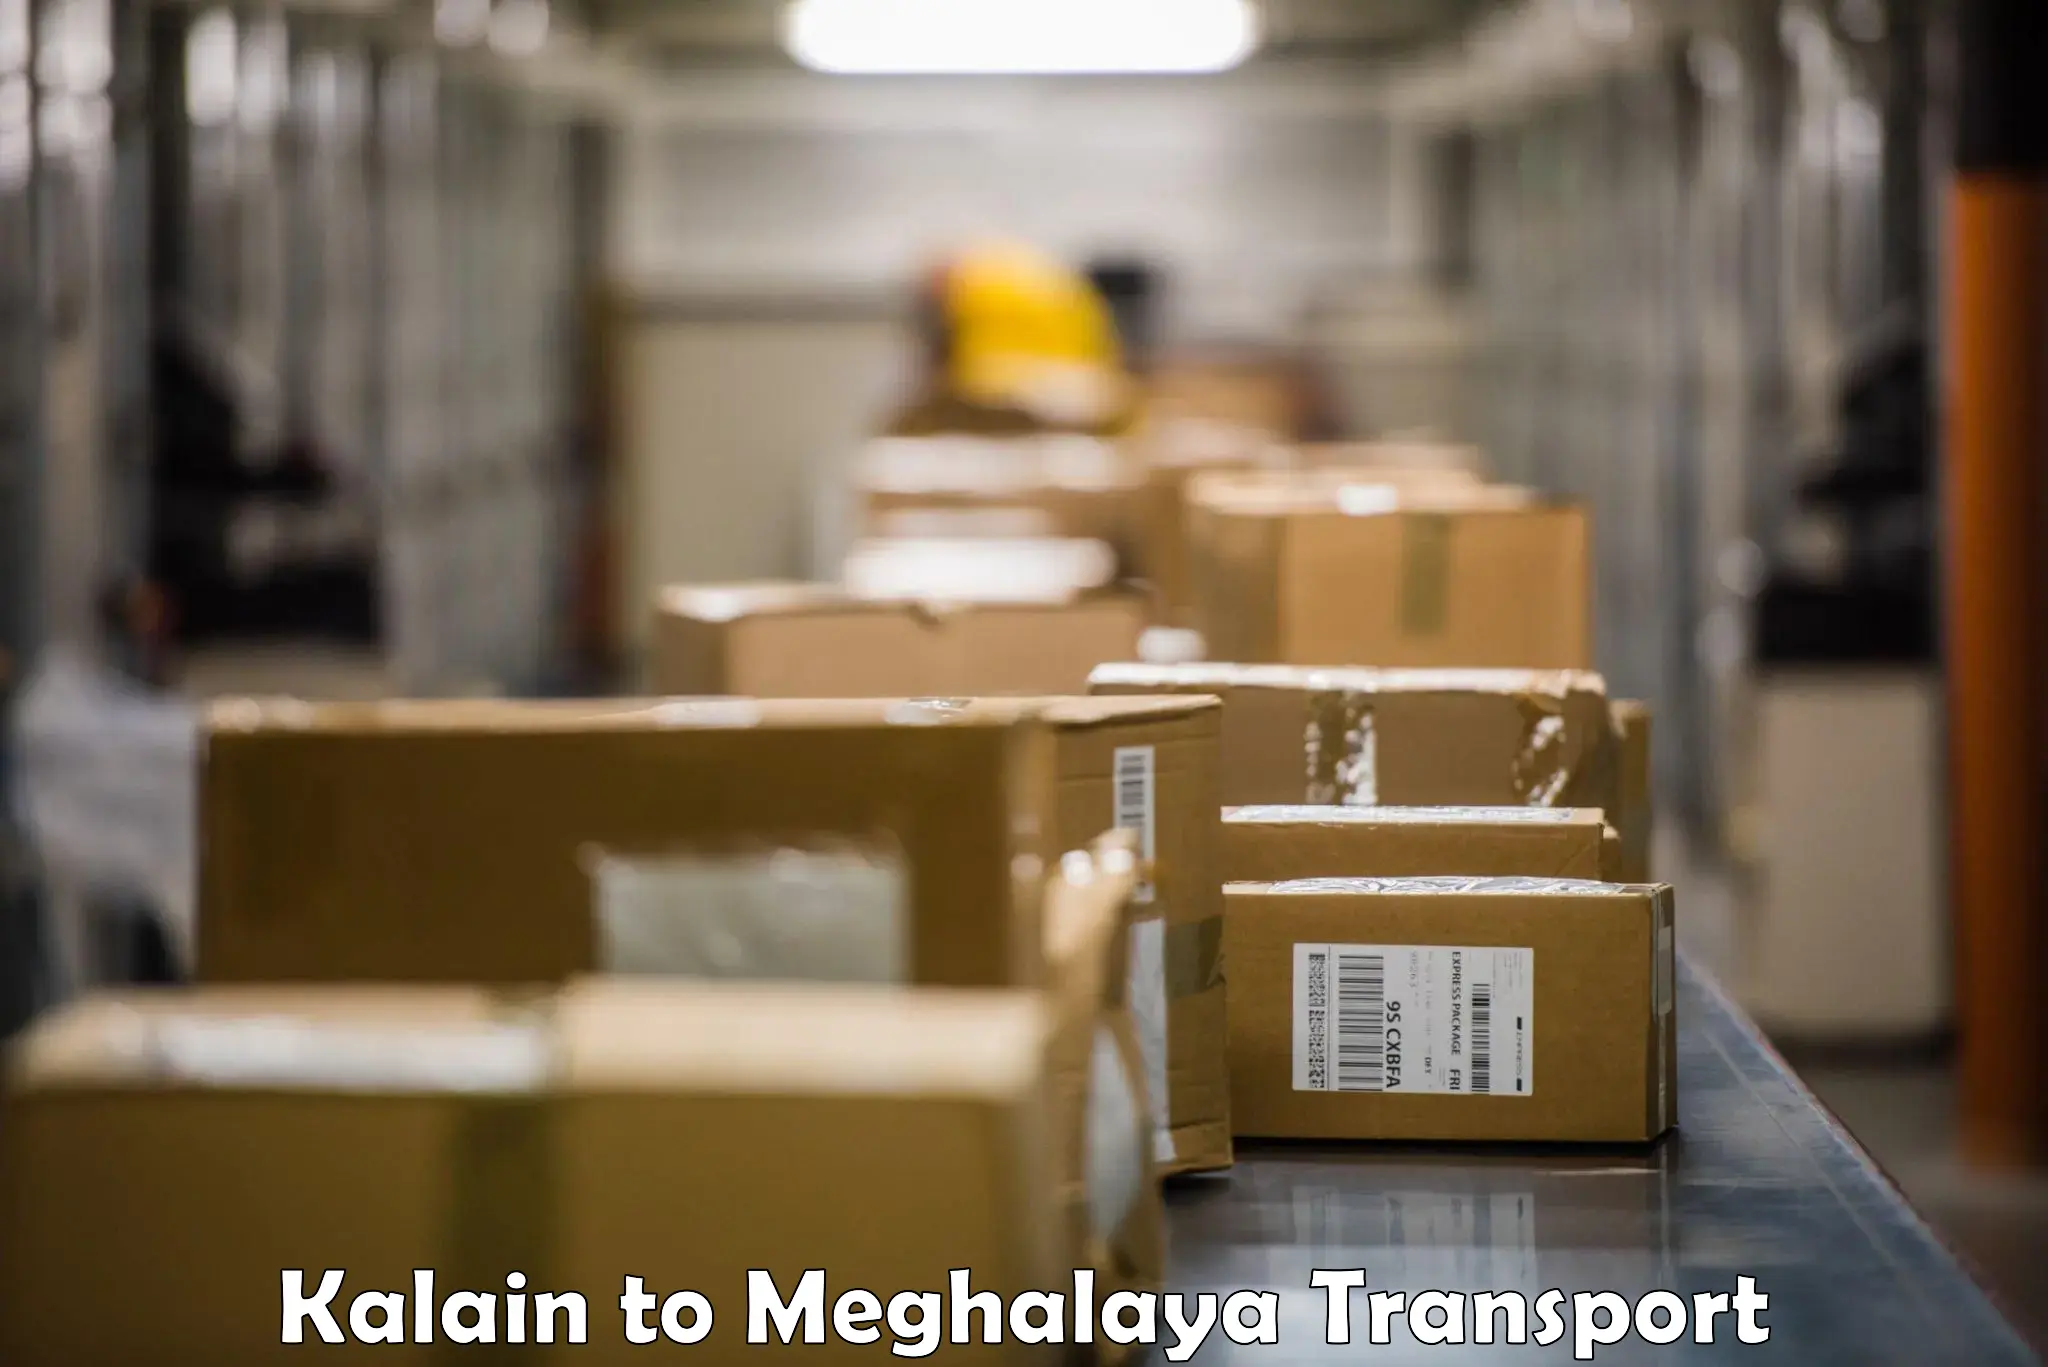 Cargo transport services Kalain to Cherrapunji